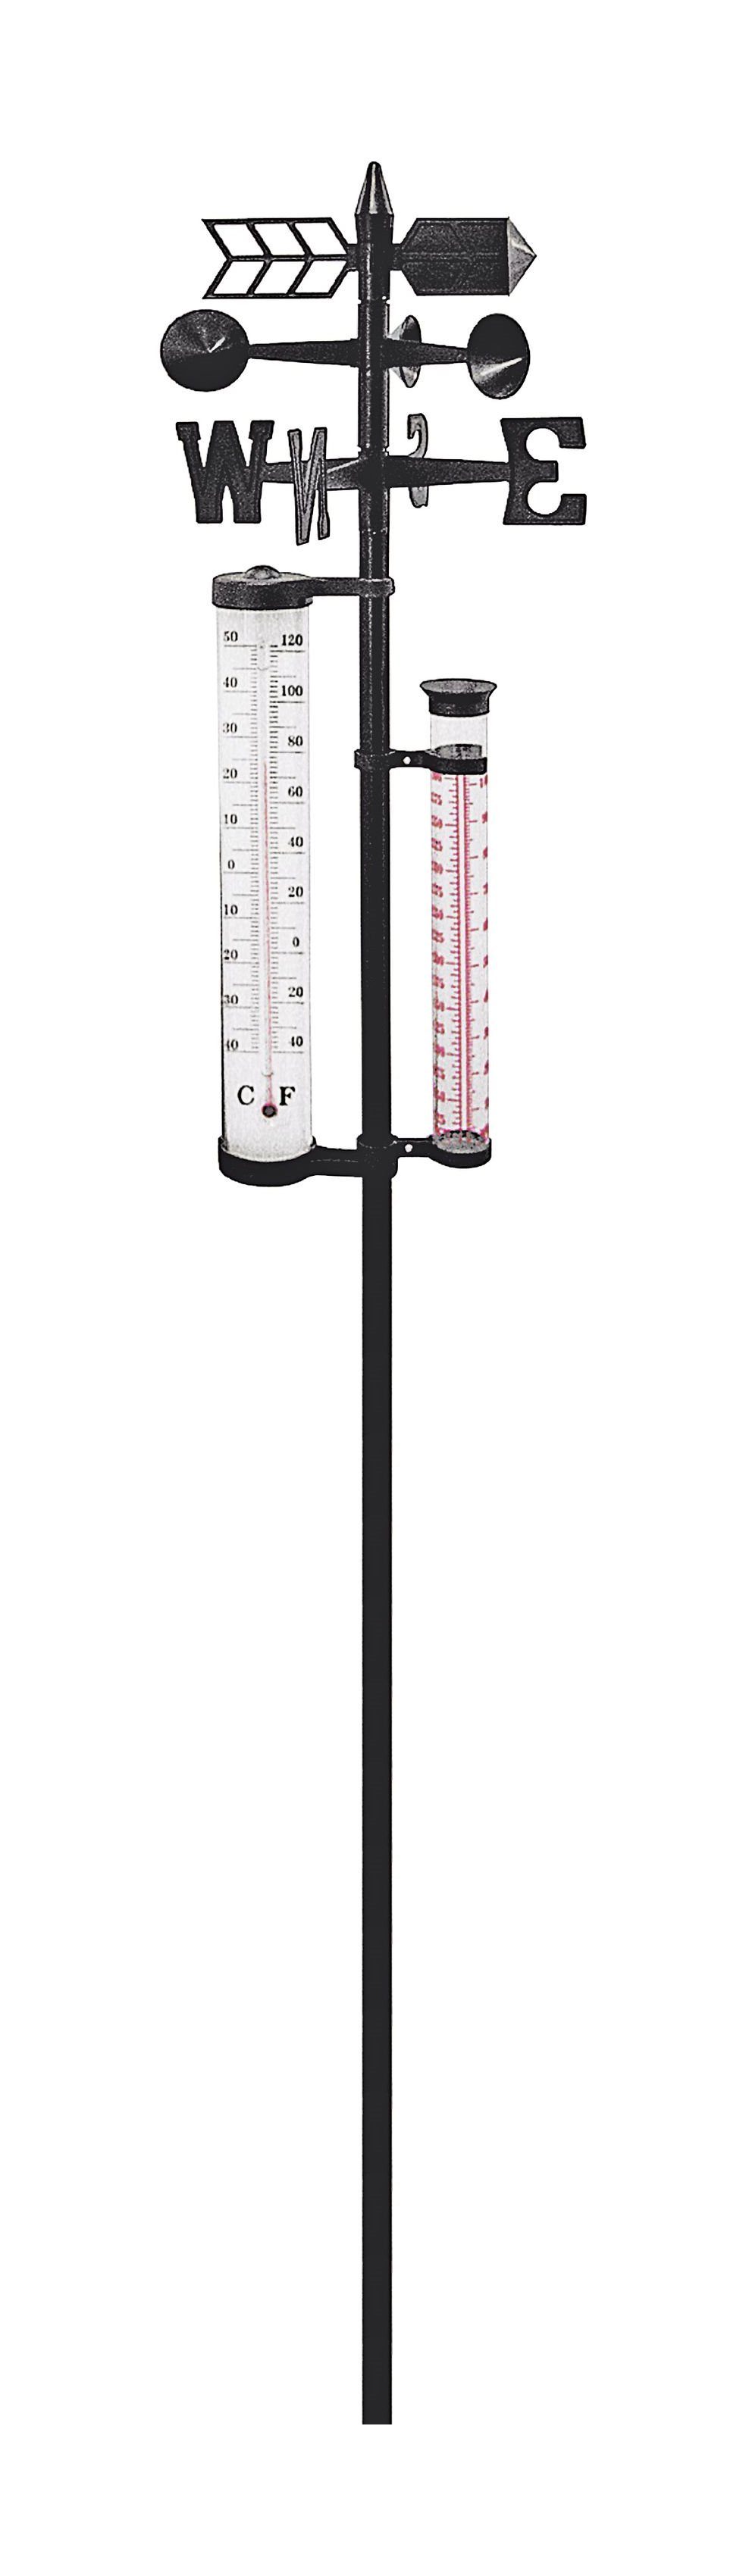 dynamic24 Außenwetterstation (XL Garten Wetterstation 145cm Barometer  Regenmesser Thermometer Windstärke)